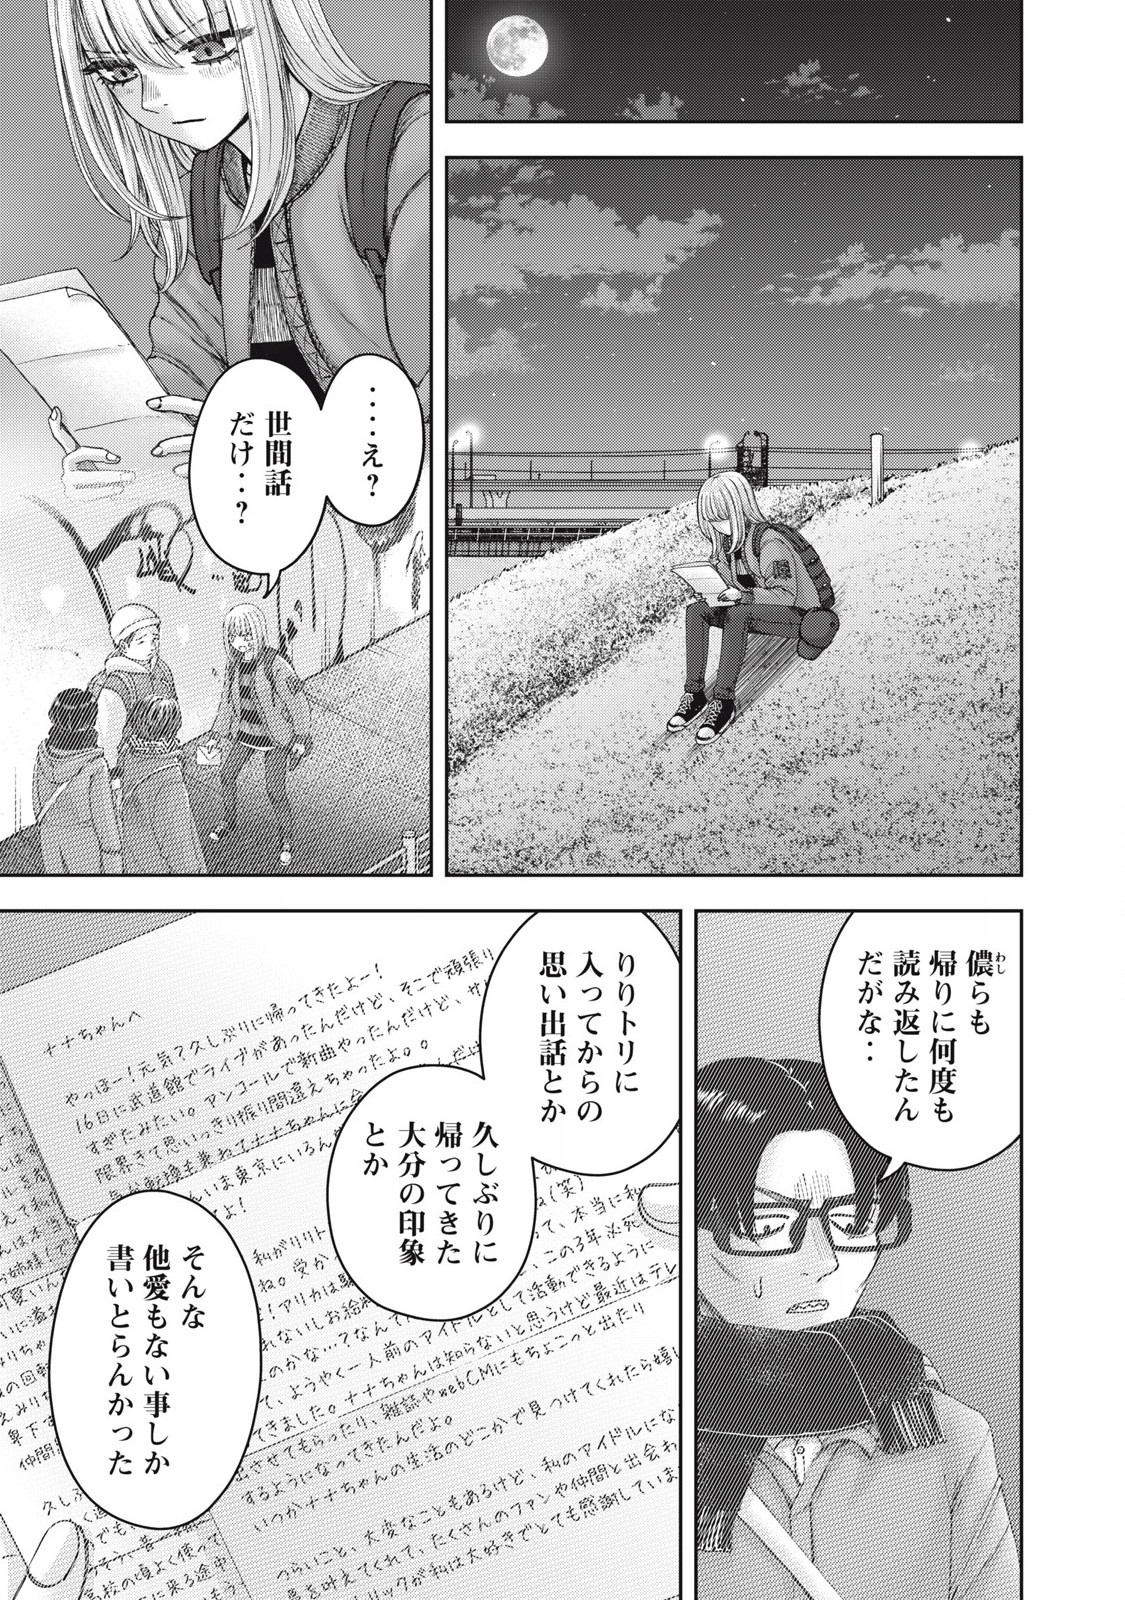 Watashi no Arika - Chapter 59 - Page 5